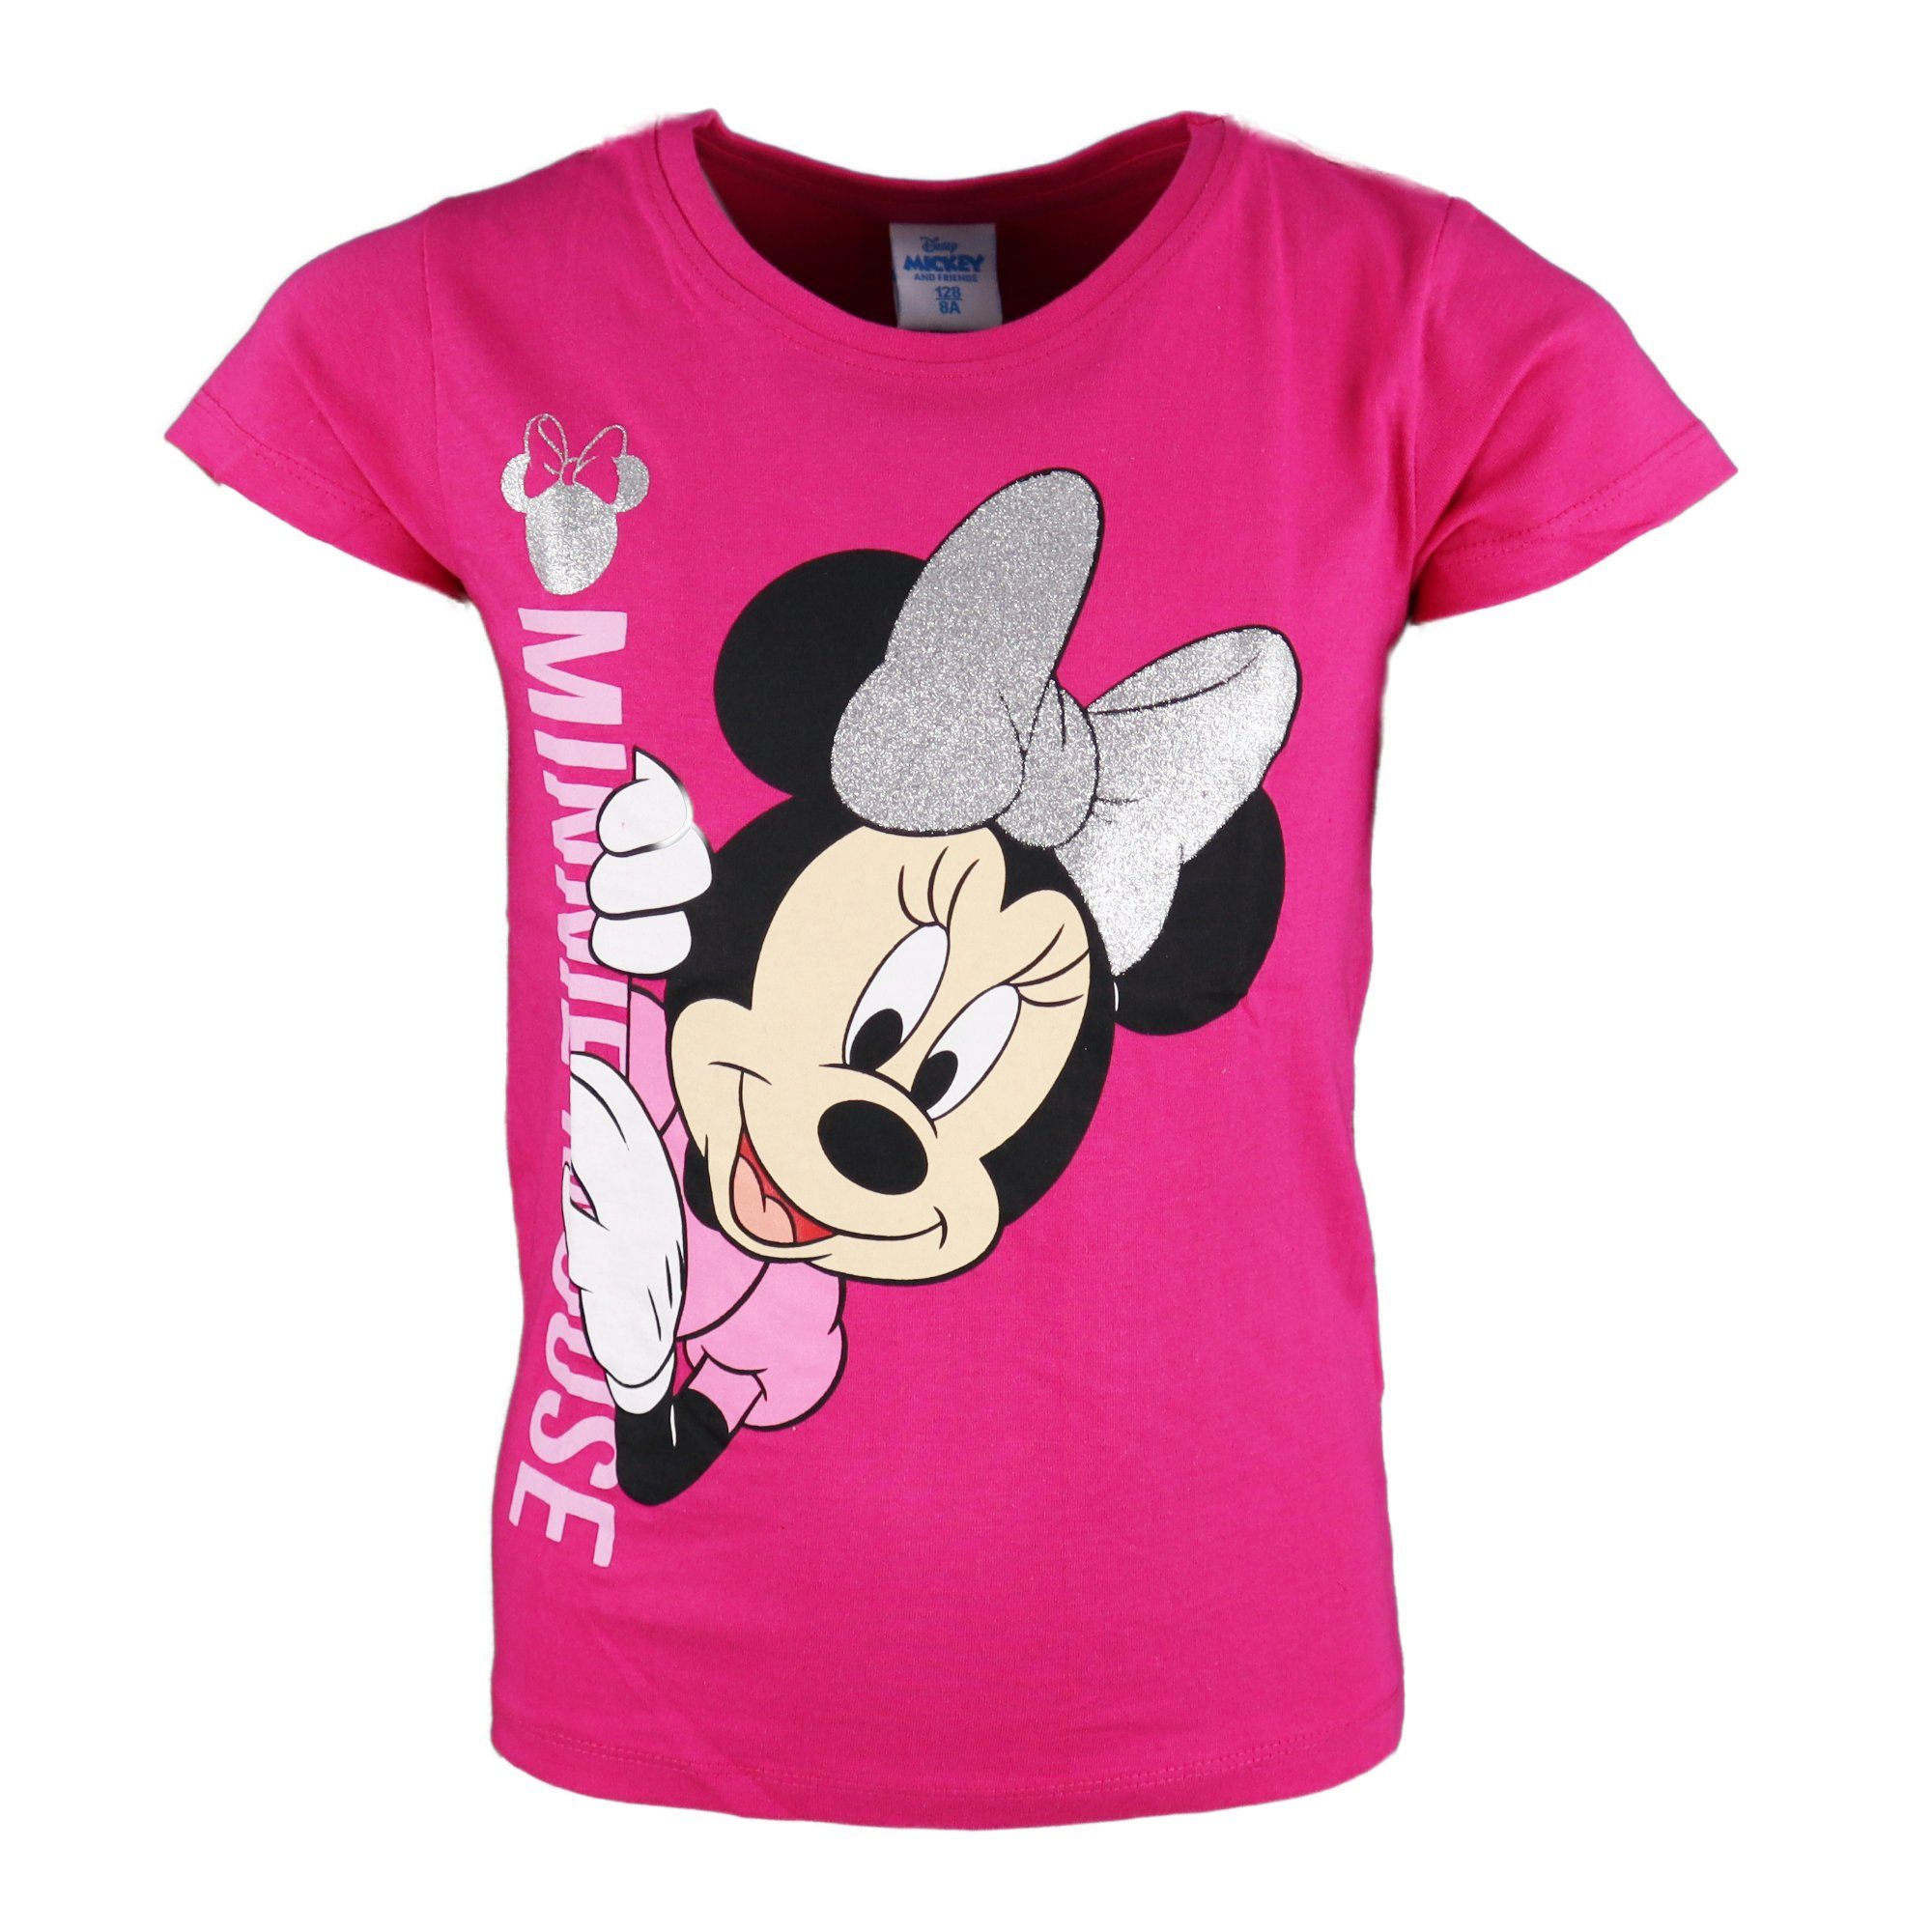 Kinder 104 Baumwolle T-Shirt Minnie Disney Minnie Shirt Pink 134, Maus Mädchen 100% Mouse bis Gr.